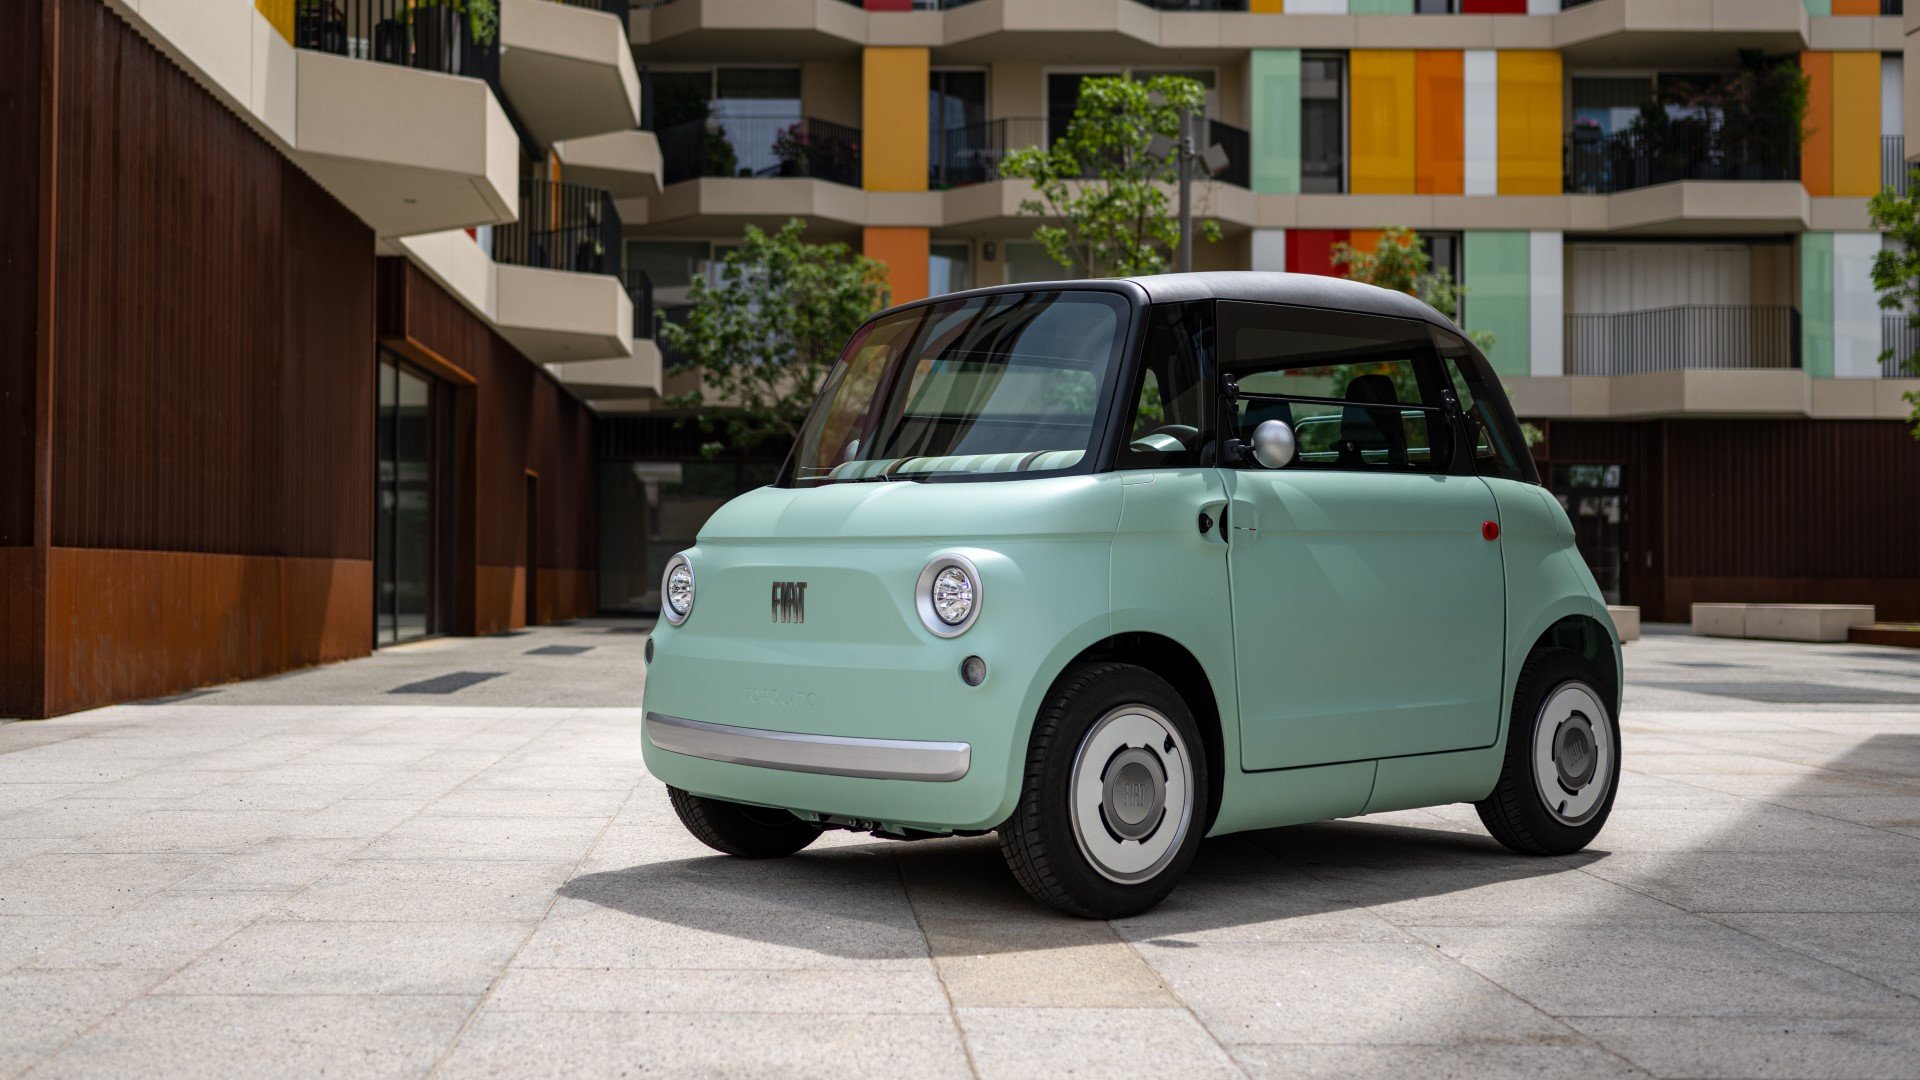 Το νέο Fiat Topolino ομορφαίνει την πόλη